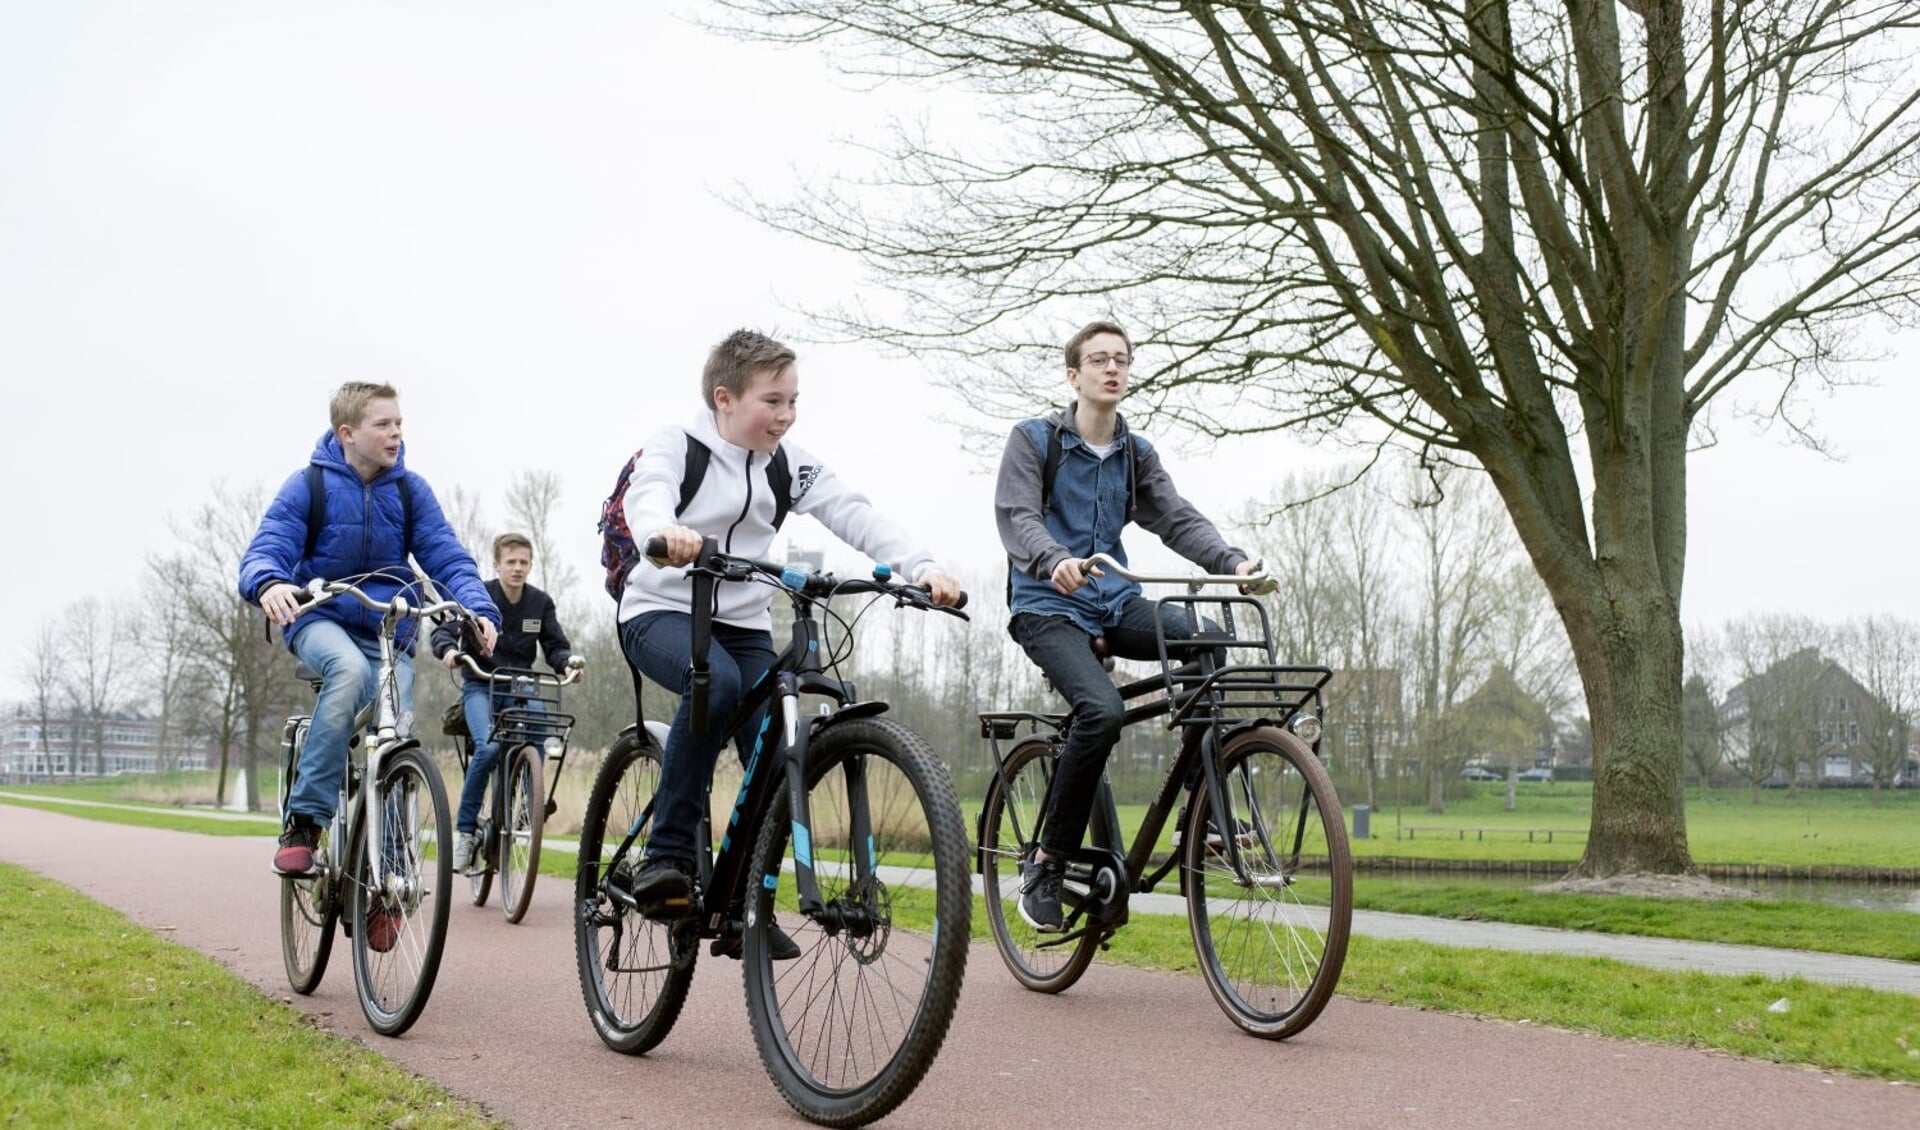 Met een fiets via Leergeld met vrienden op pad.